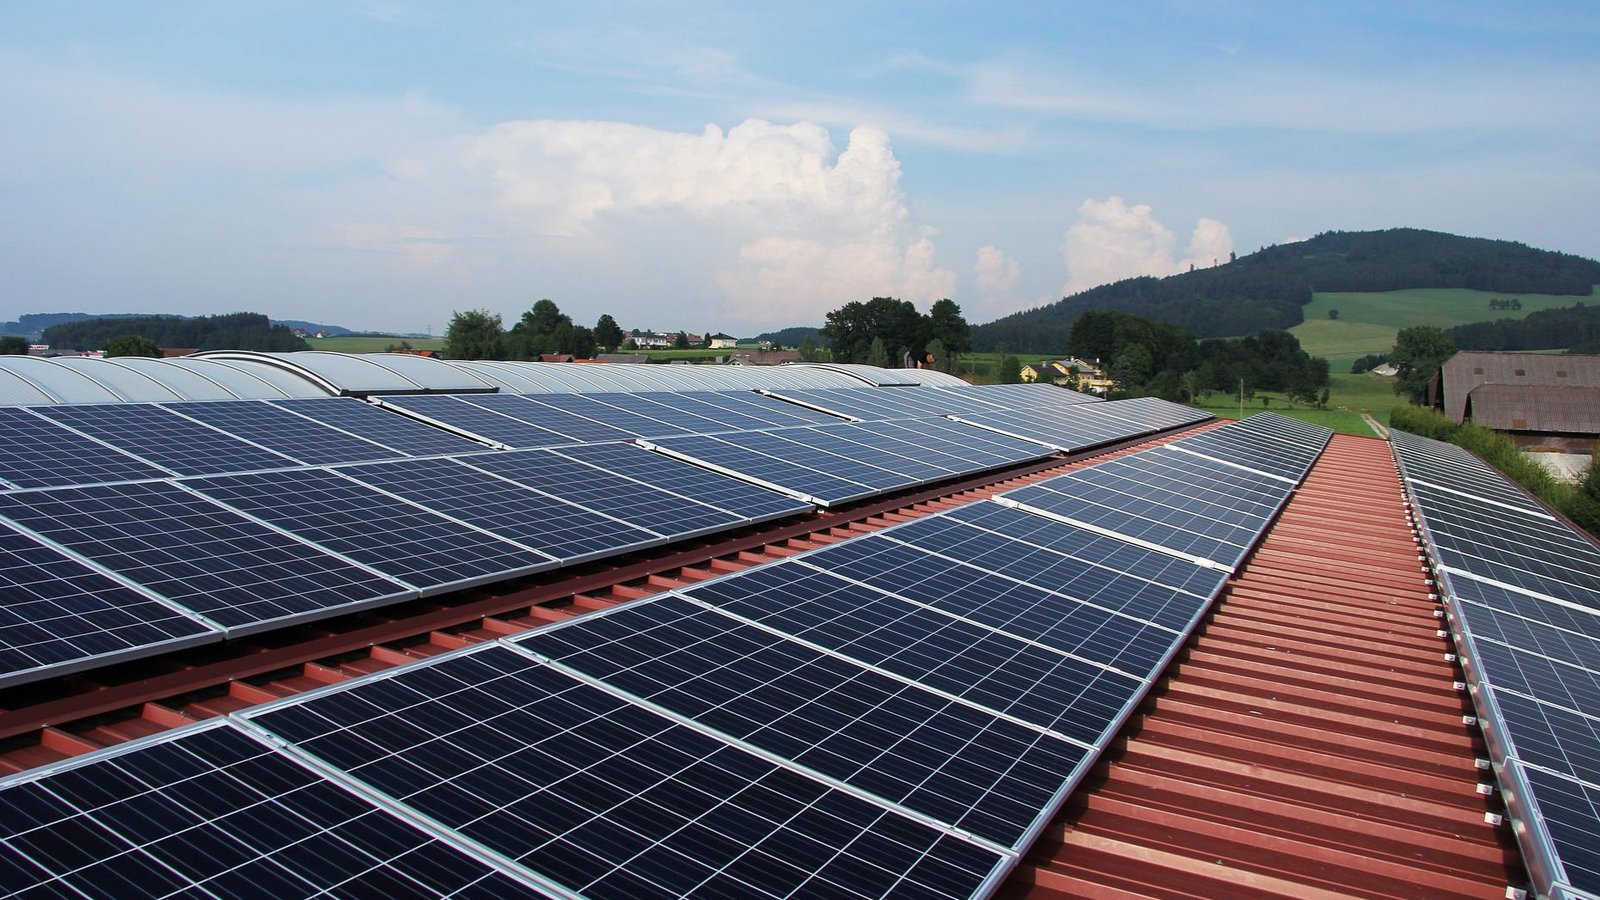 Solarmodule werden angesichts stark wachsender Kosten für Wärme und Strom „immer wichtiger“, sagt Berater Lampe. Foto: Pixabay